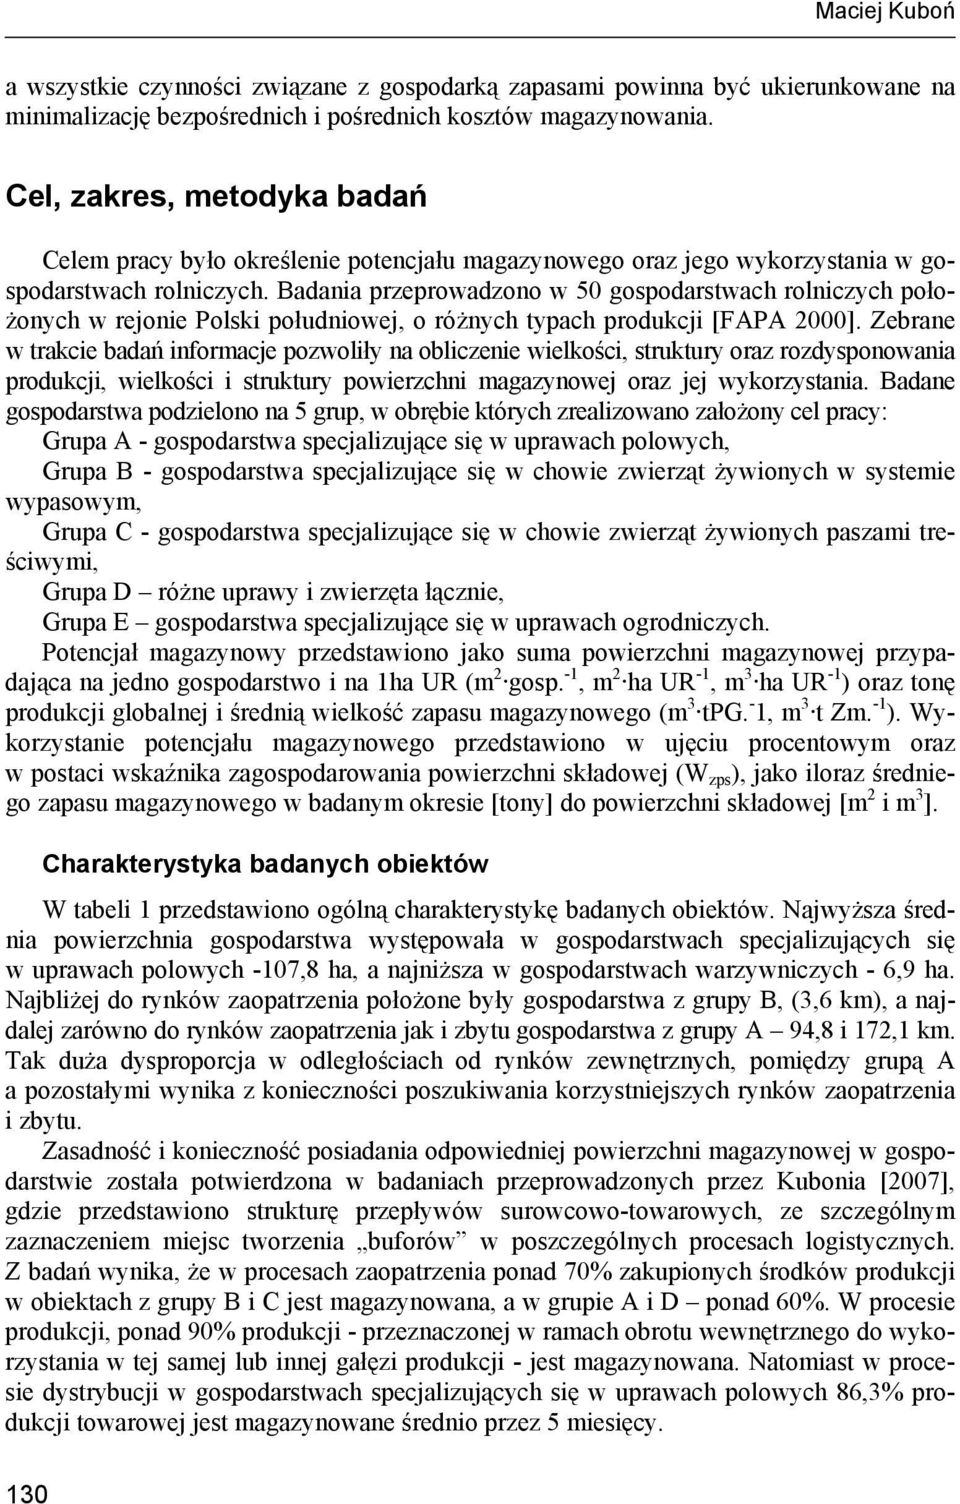 Badania przeprowadzono w 50 ach rolniczych położonych w rejonie Polski południowej, o różnych typach produkcji [FAPA 2000].